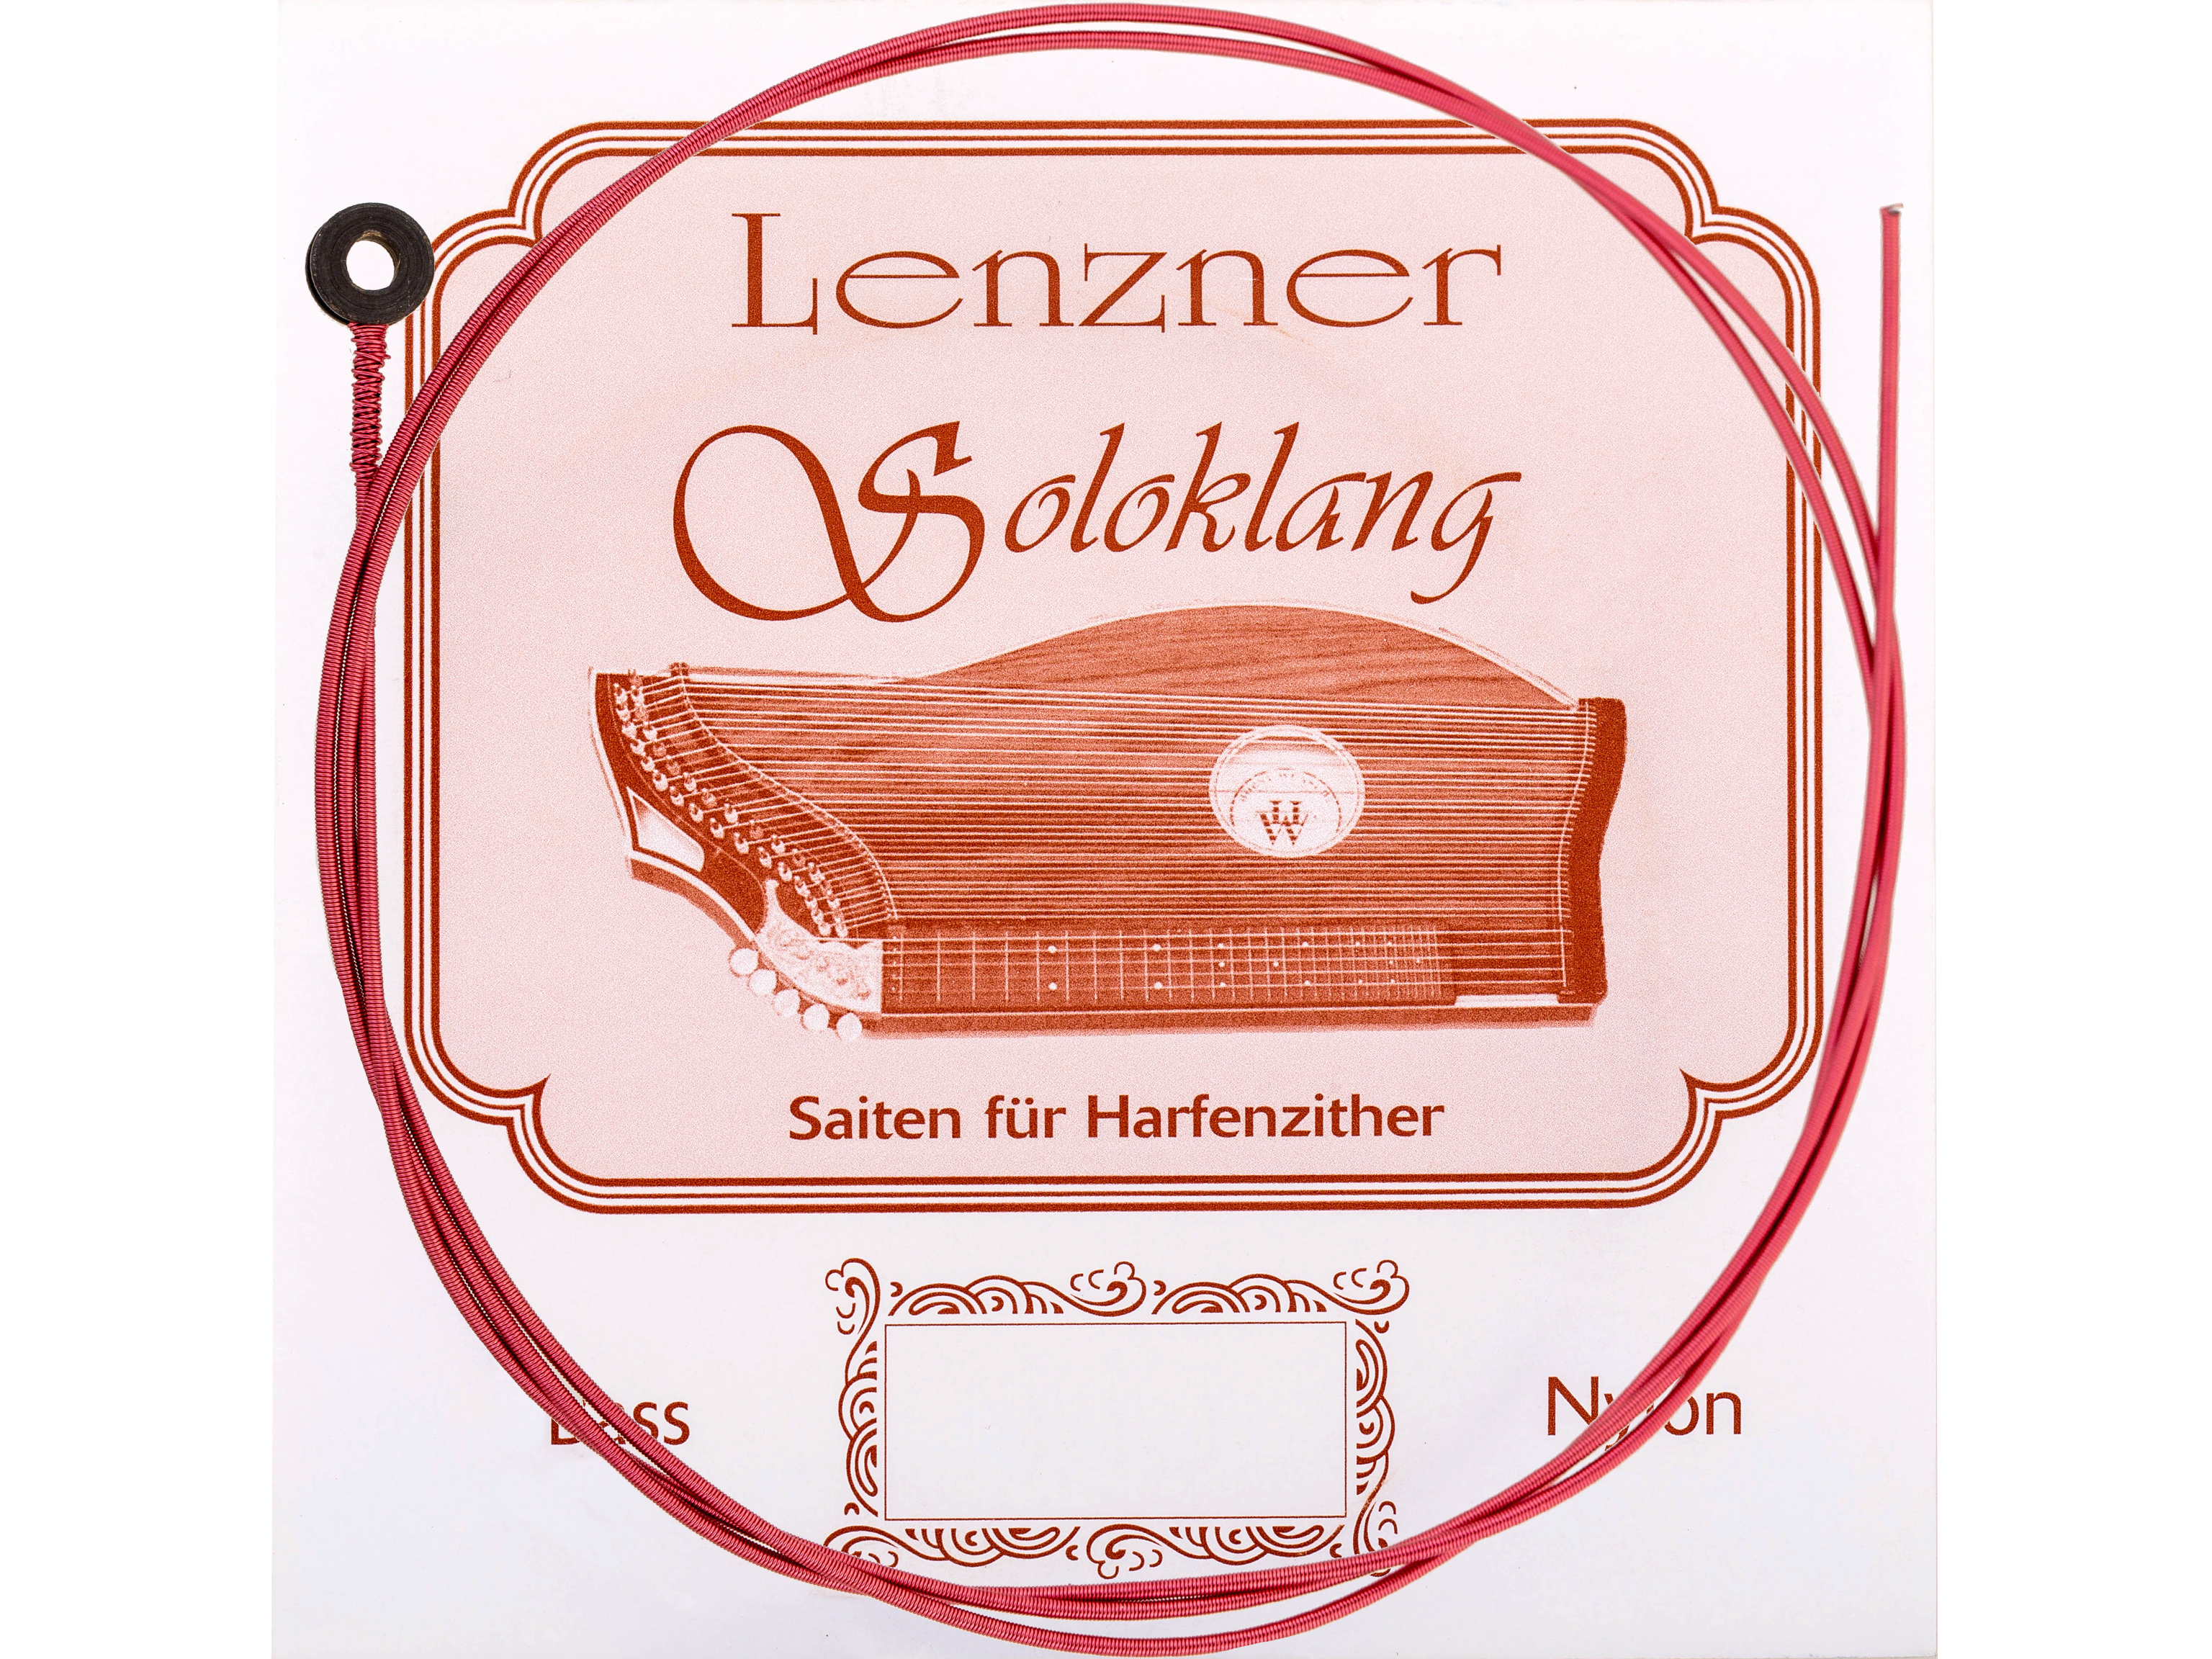 Lenzner A 19.Zithersaite Soloklang Bass